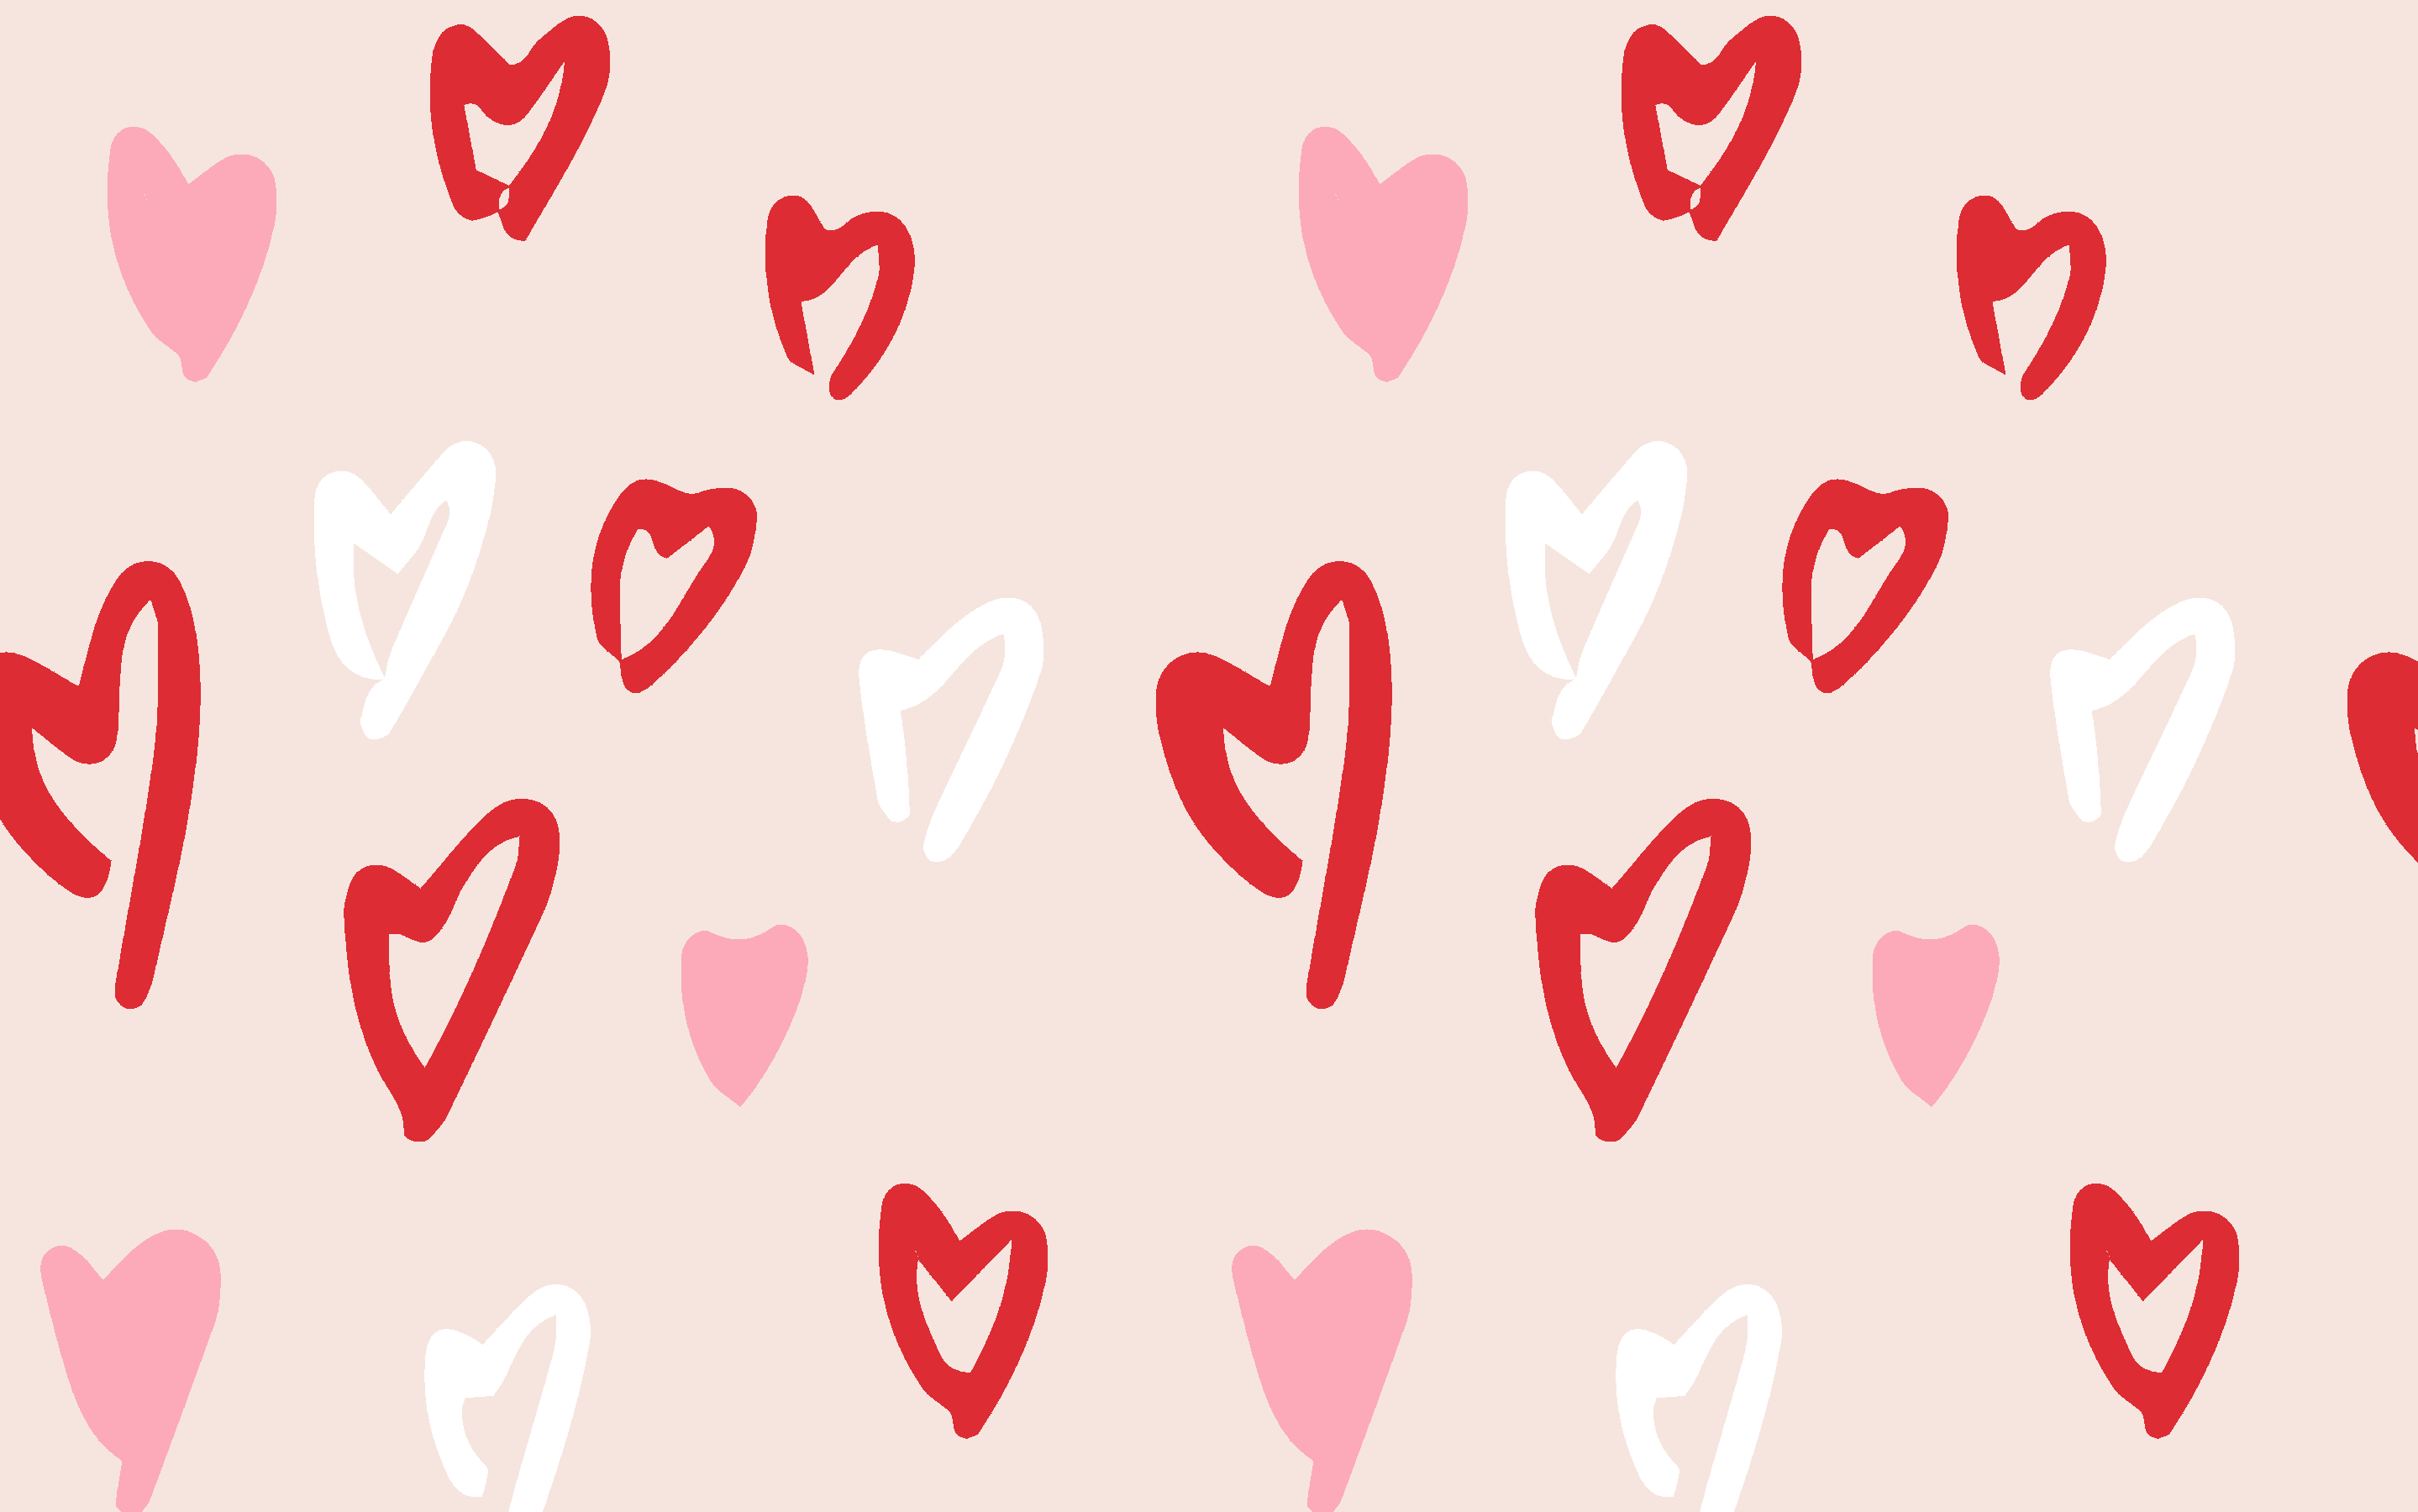 Hãy trang trí màn hình của bạn bằng những bức ảnh Valentines Day Desktop Background Download hoàn hảo cho ngày lễ tình nhân này. Với nhiều màu sắc và chủ đề khác nhau, đảm bảo sẽ đáp ứng được sở thích của mọi người. Tất cả các hình ảnh đều miễn phí và dễ dàng để tải xuống, cho phép bạn trang trí màn hình của mình theo cách riêng của mình.